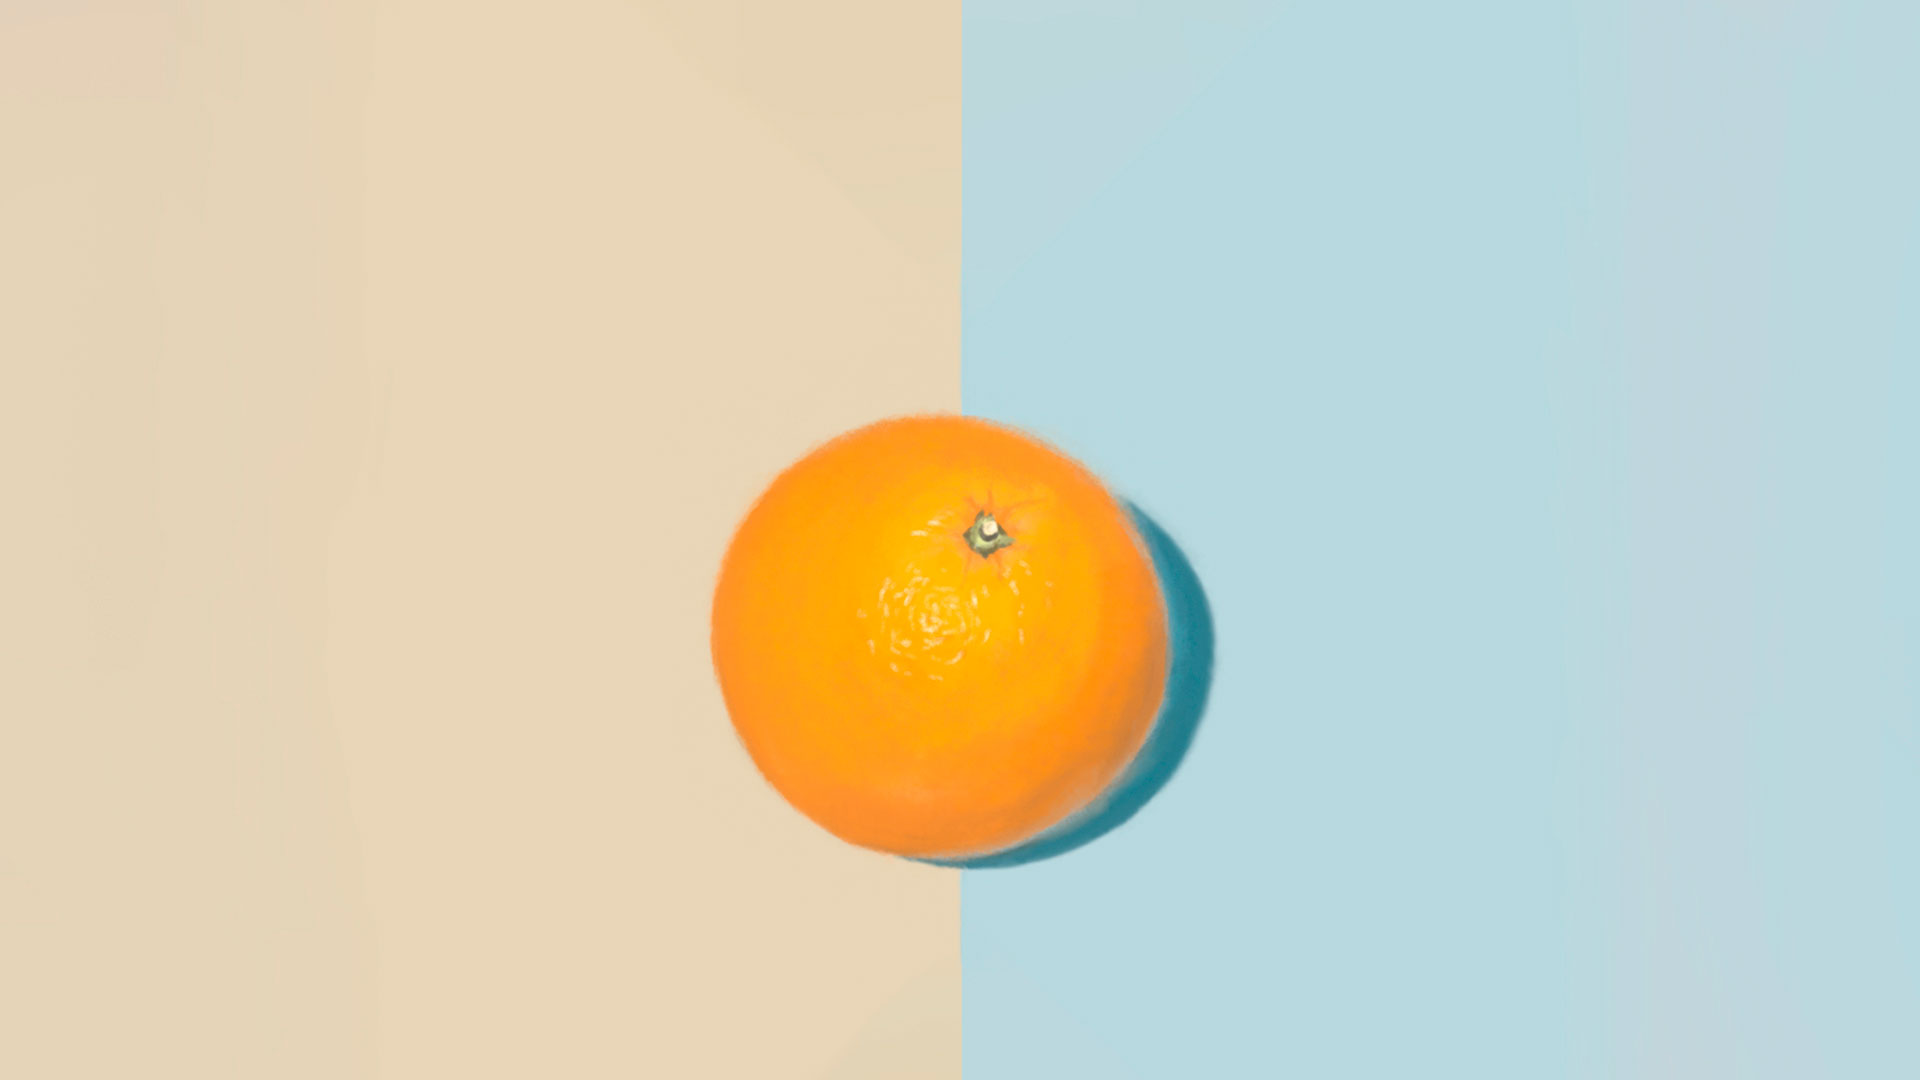 ミカンをリアルタイムで描くデジタル絵画メイキング/Real Time Drawing an orange. Digital picture making.